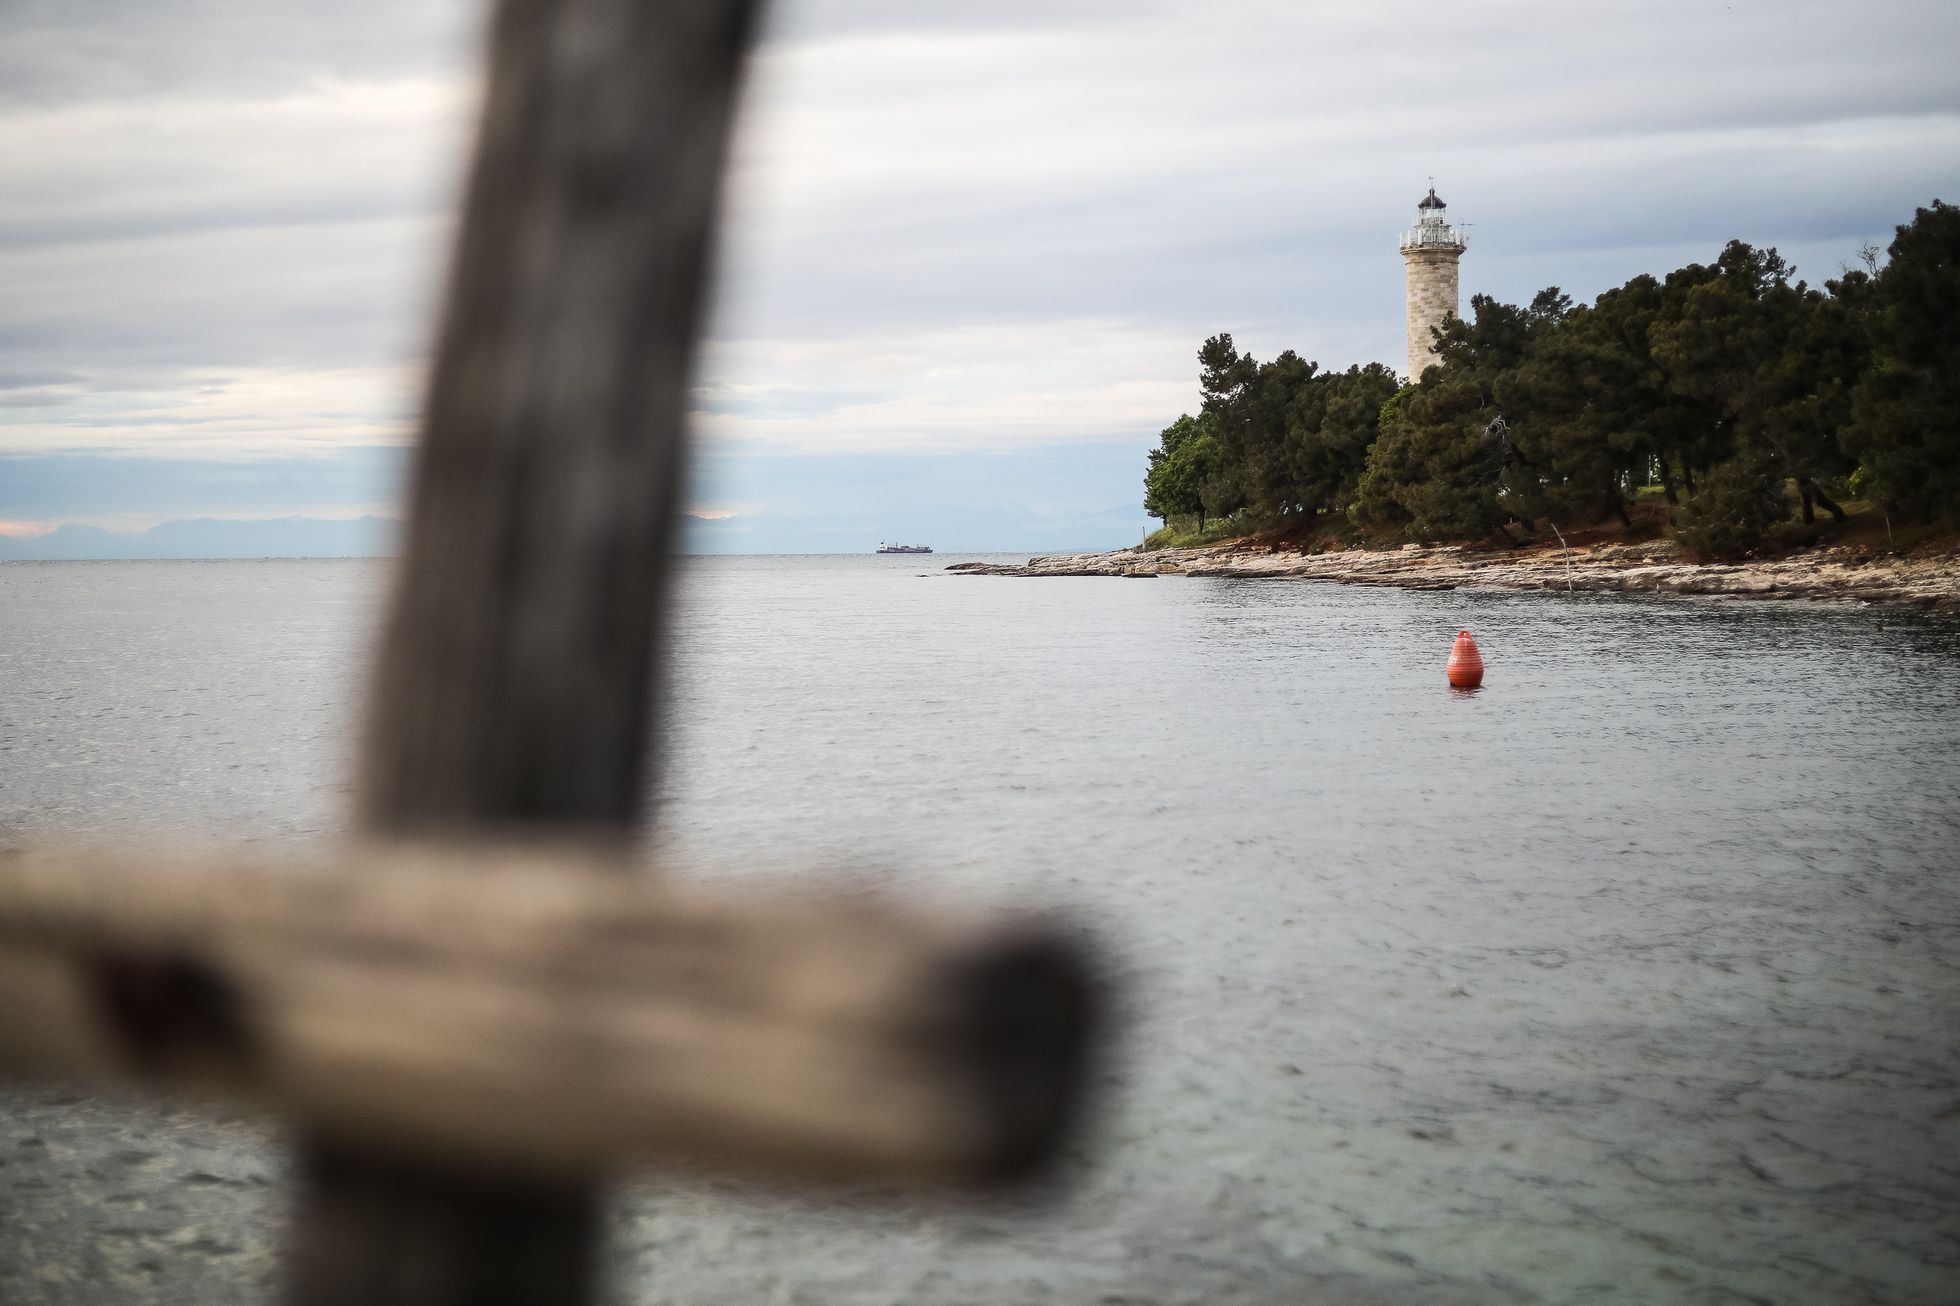 Chorvatsko - tip na dovolenou - nejbližší moře za hranicemi